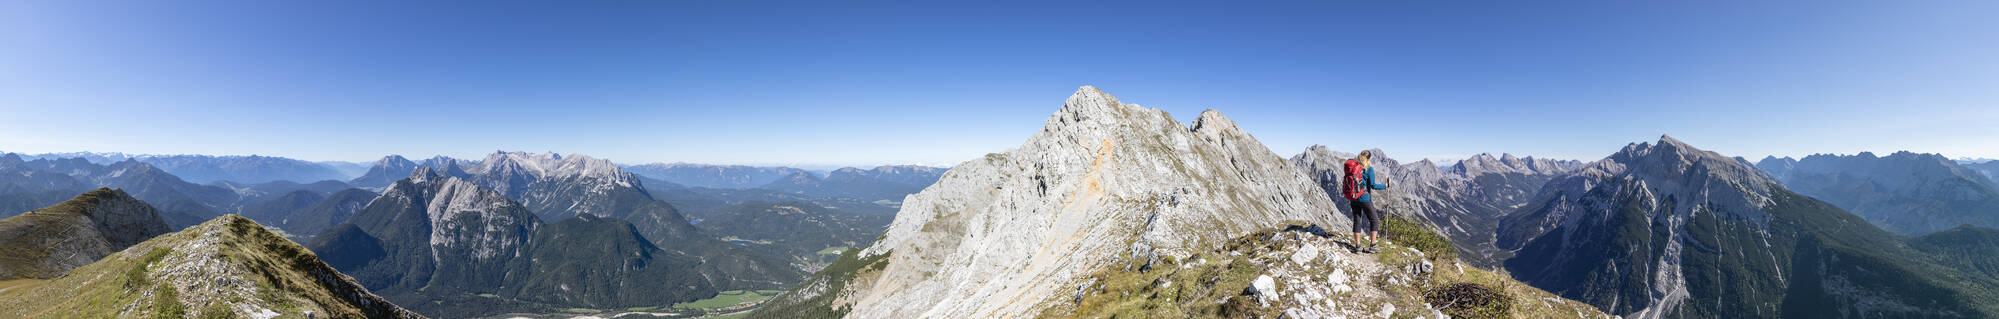 Panoramaansicht einer Wanderin, die die Aussicht auf den Mittenwalder Hohenweg und die umliegenden Berge im Sommer bewundert - FOF13020